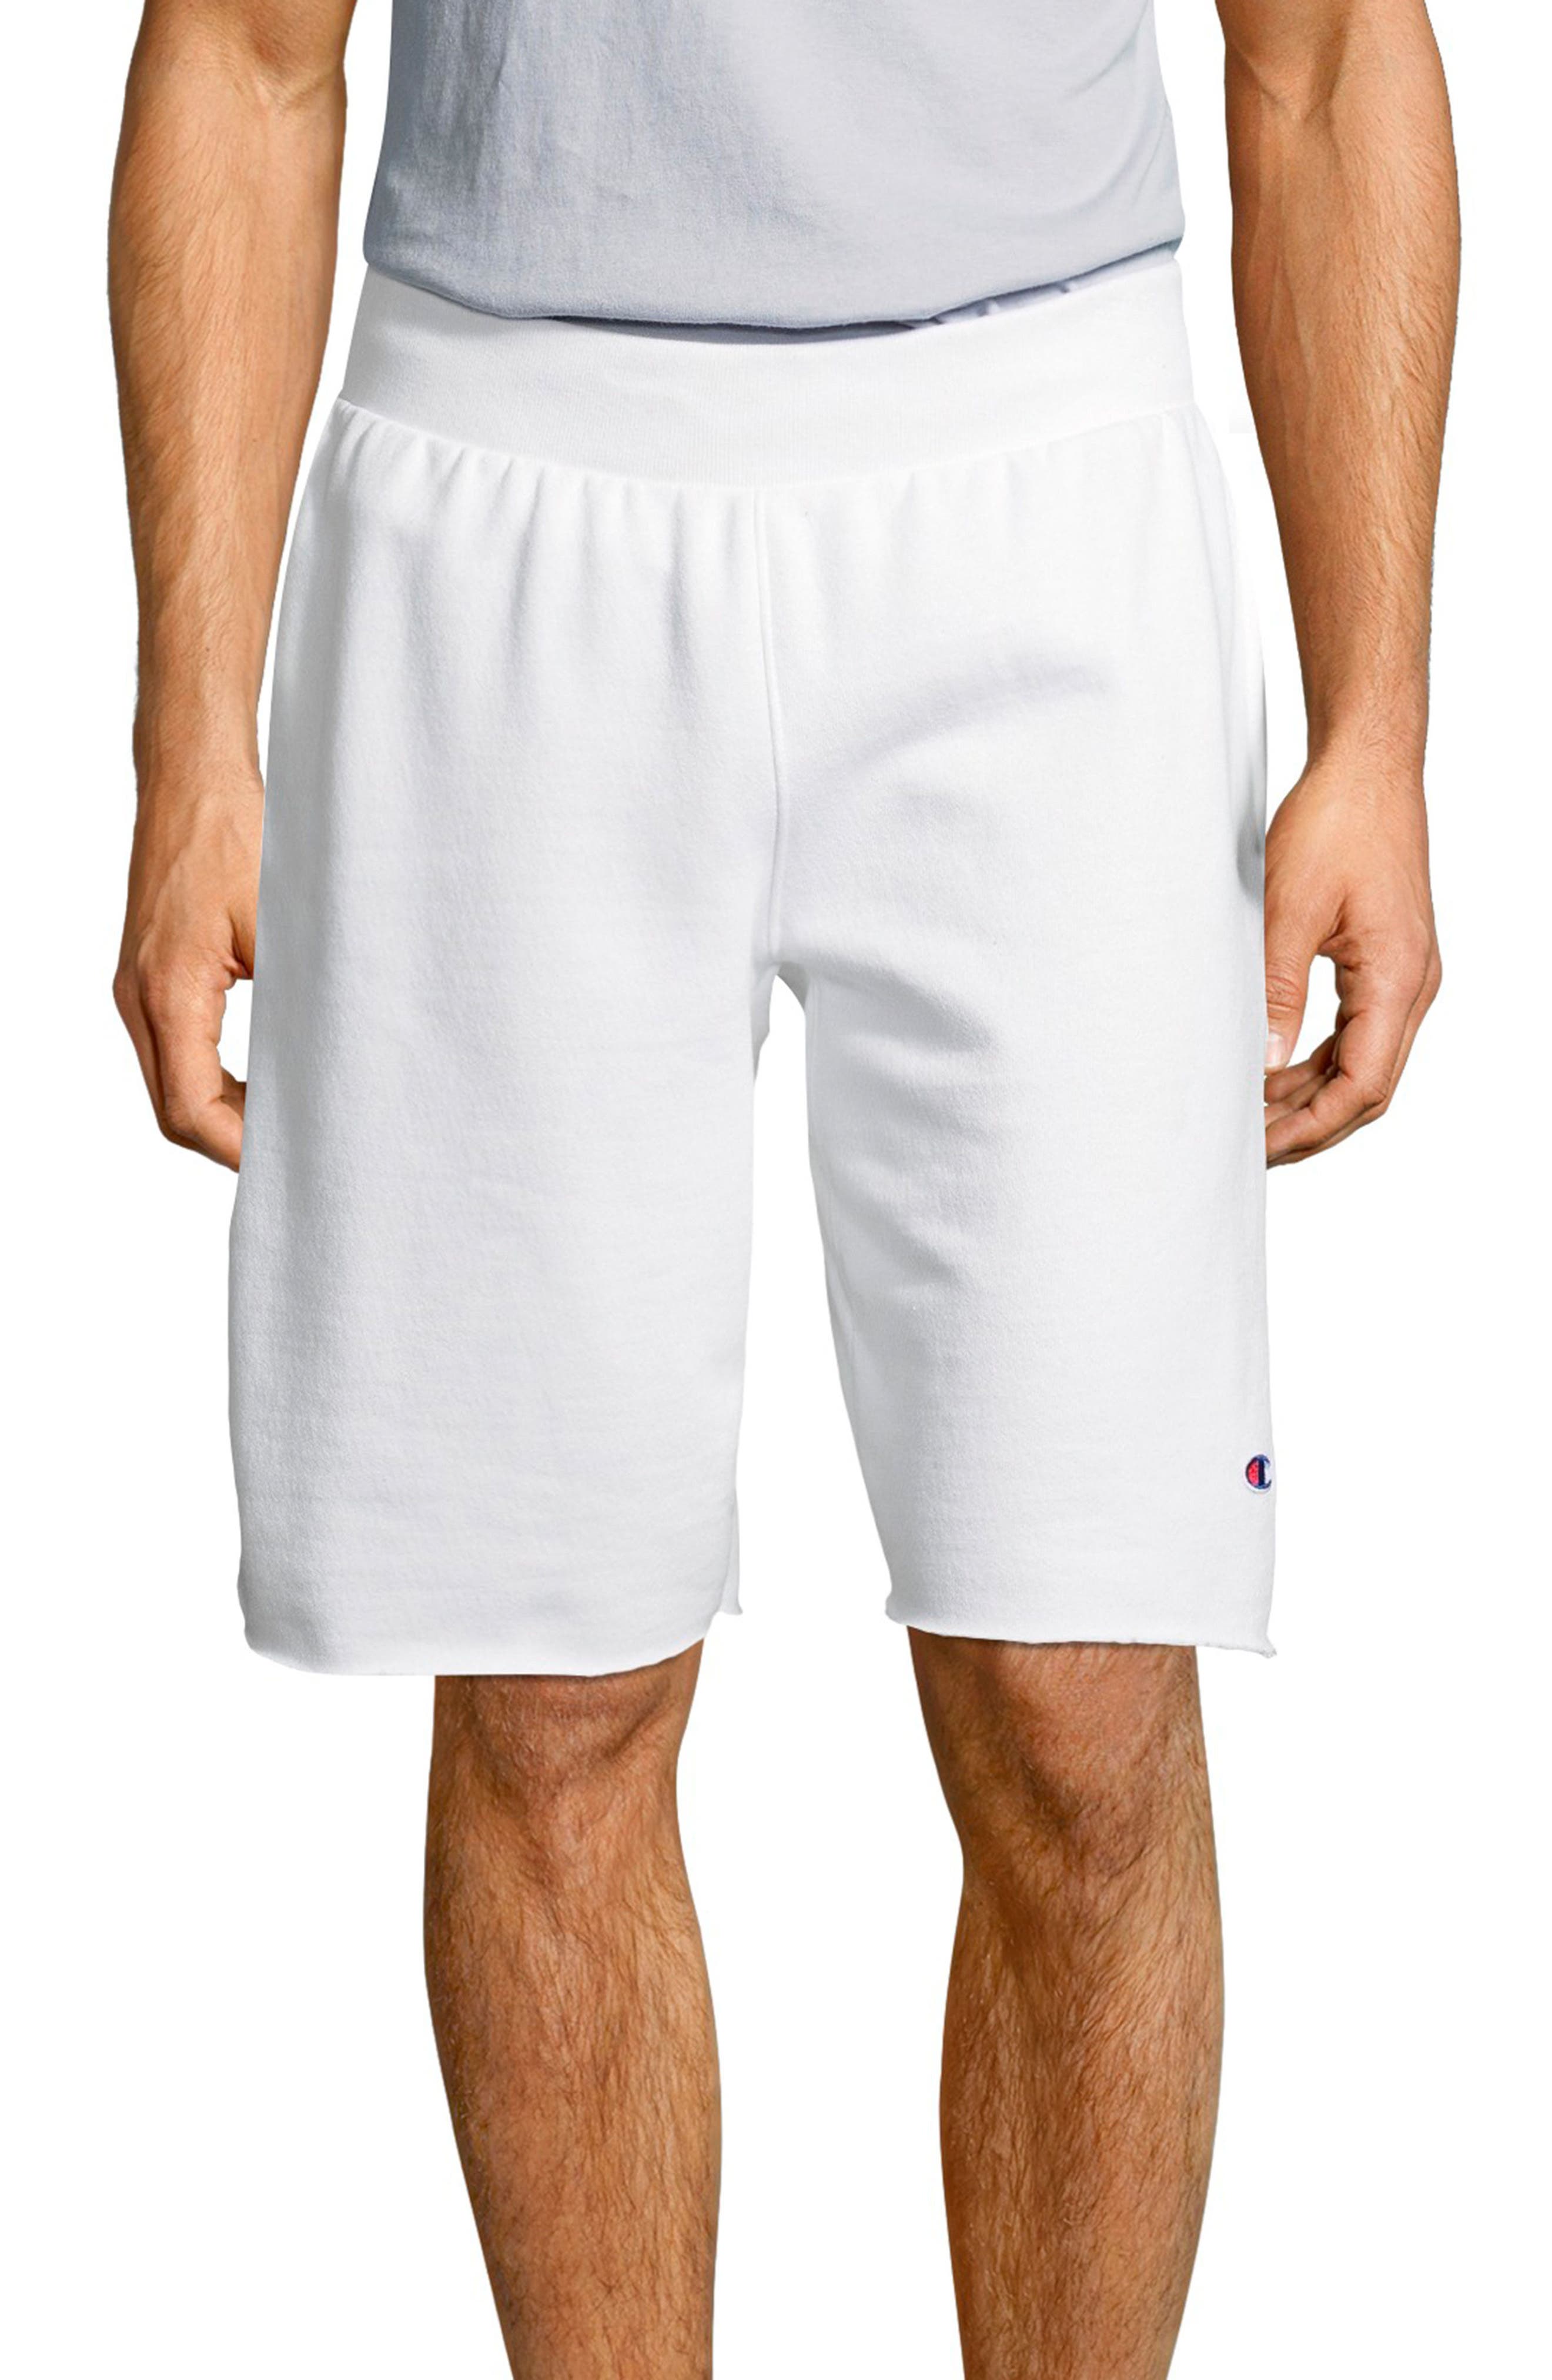 white champion shorts mens